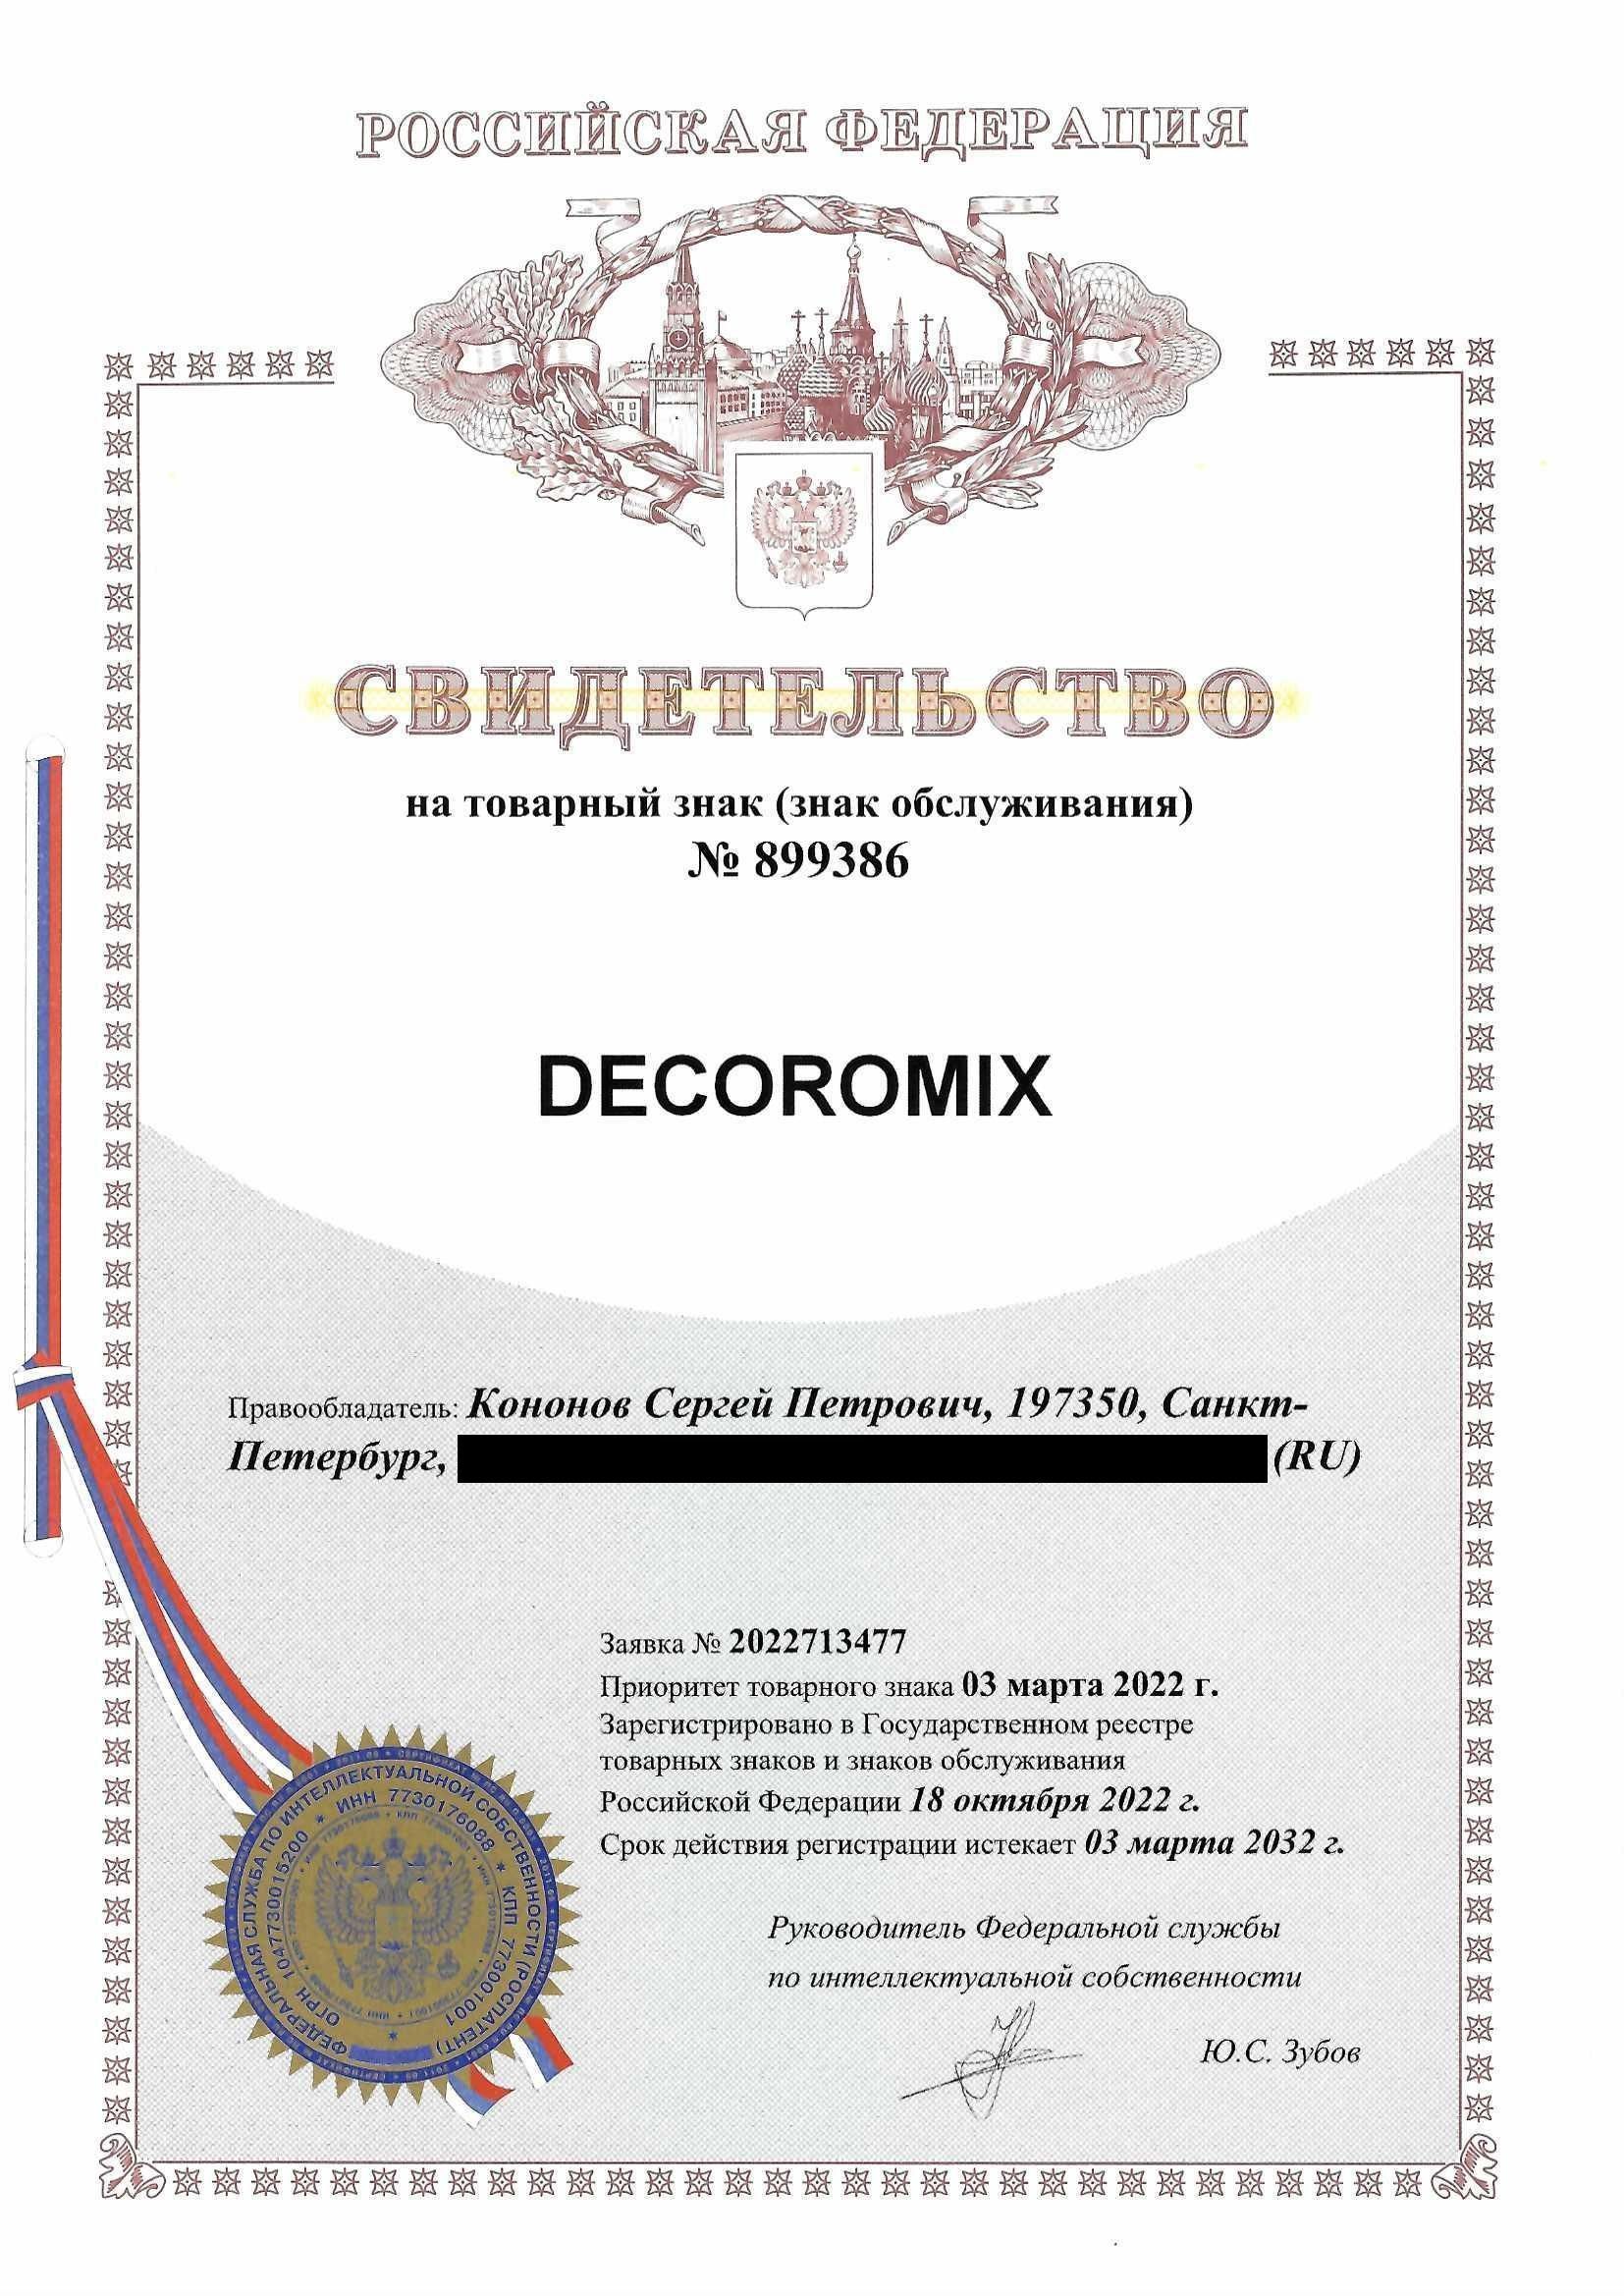 Товарный знак № 899386 – Decoromix